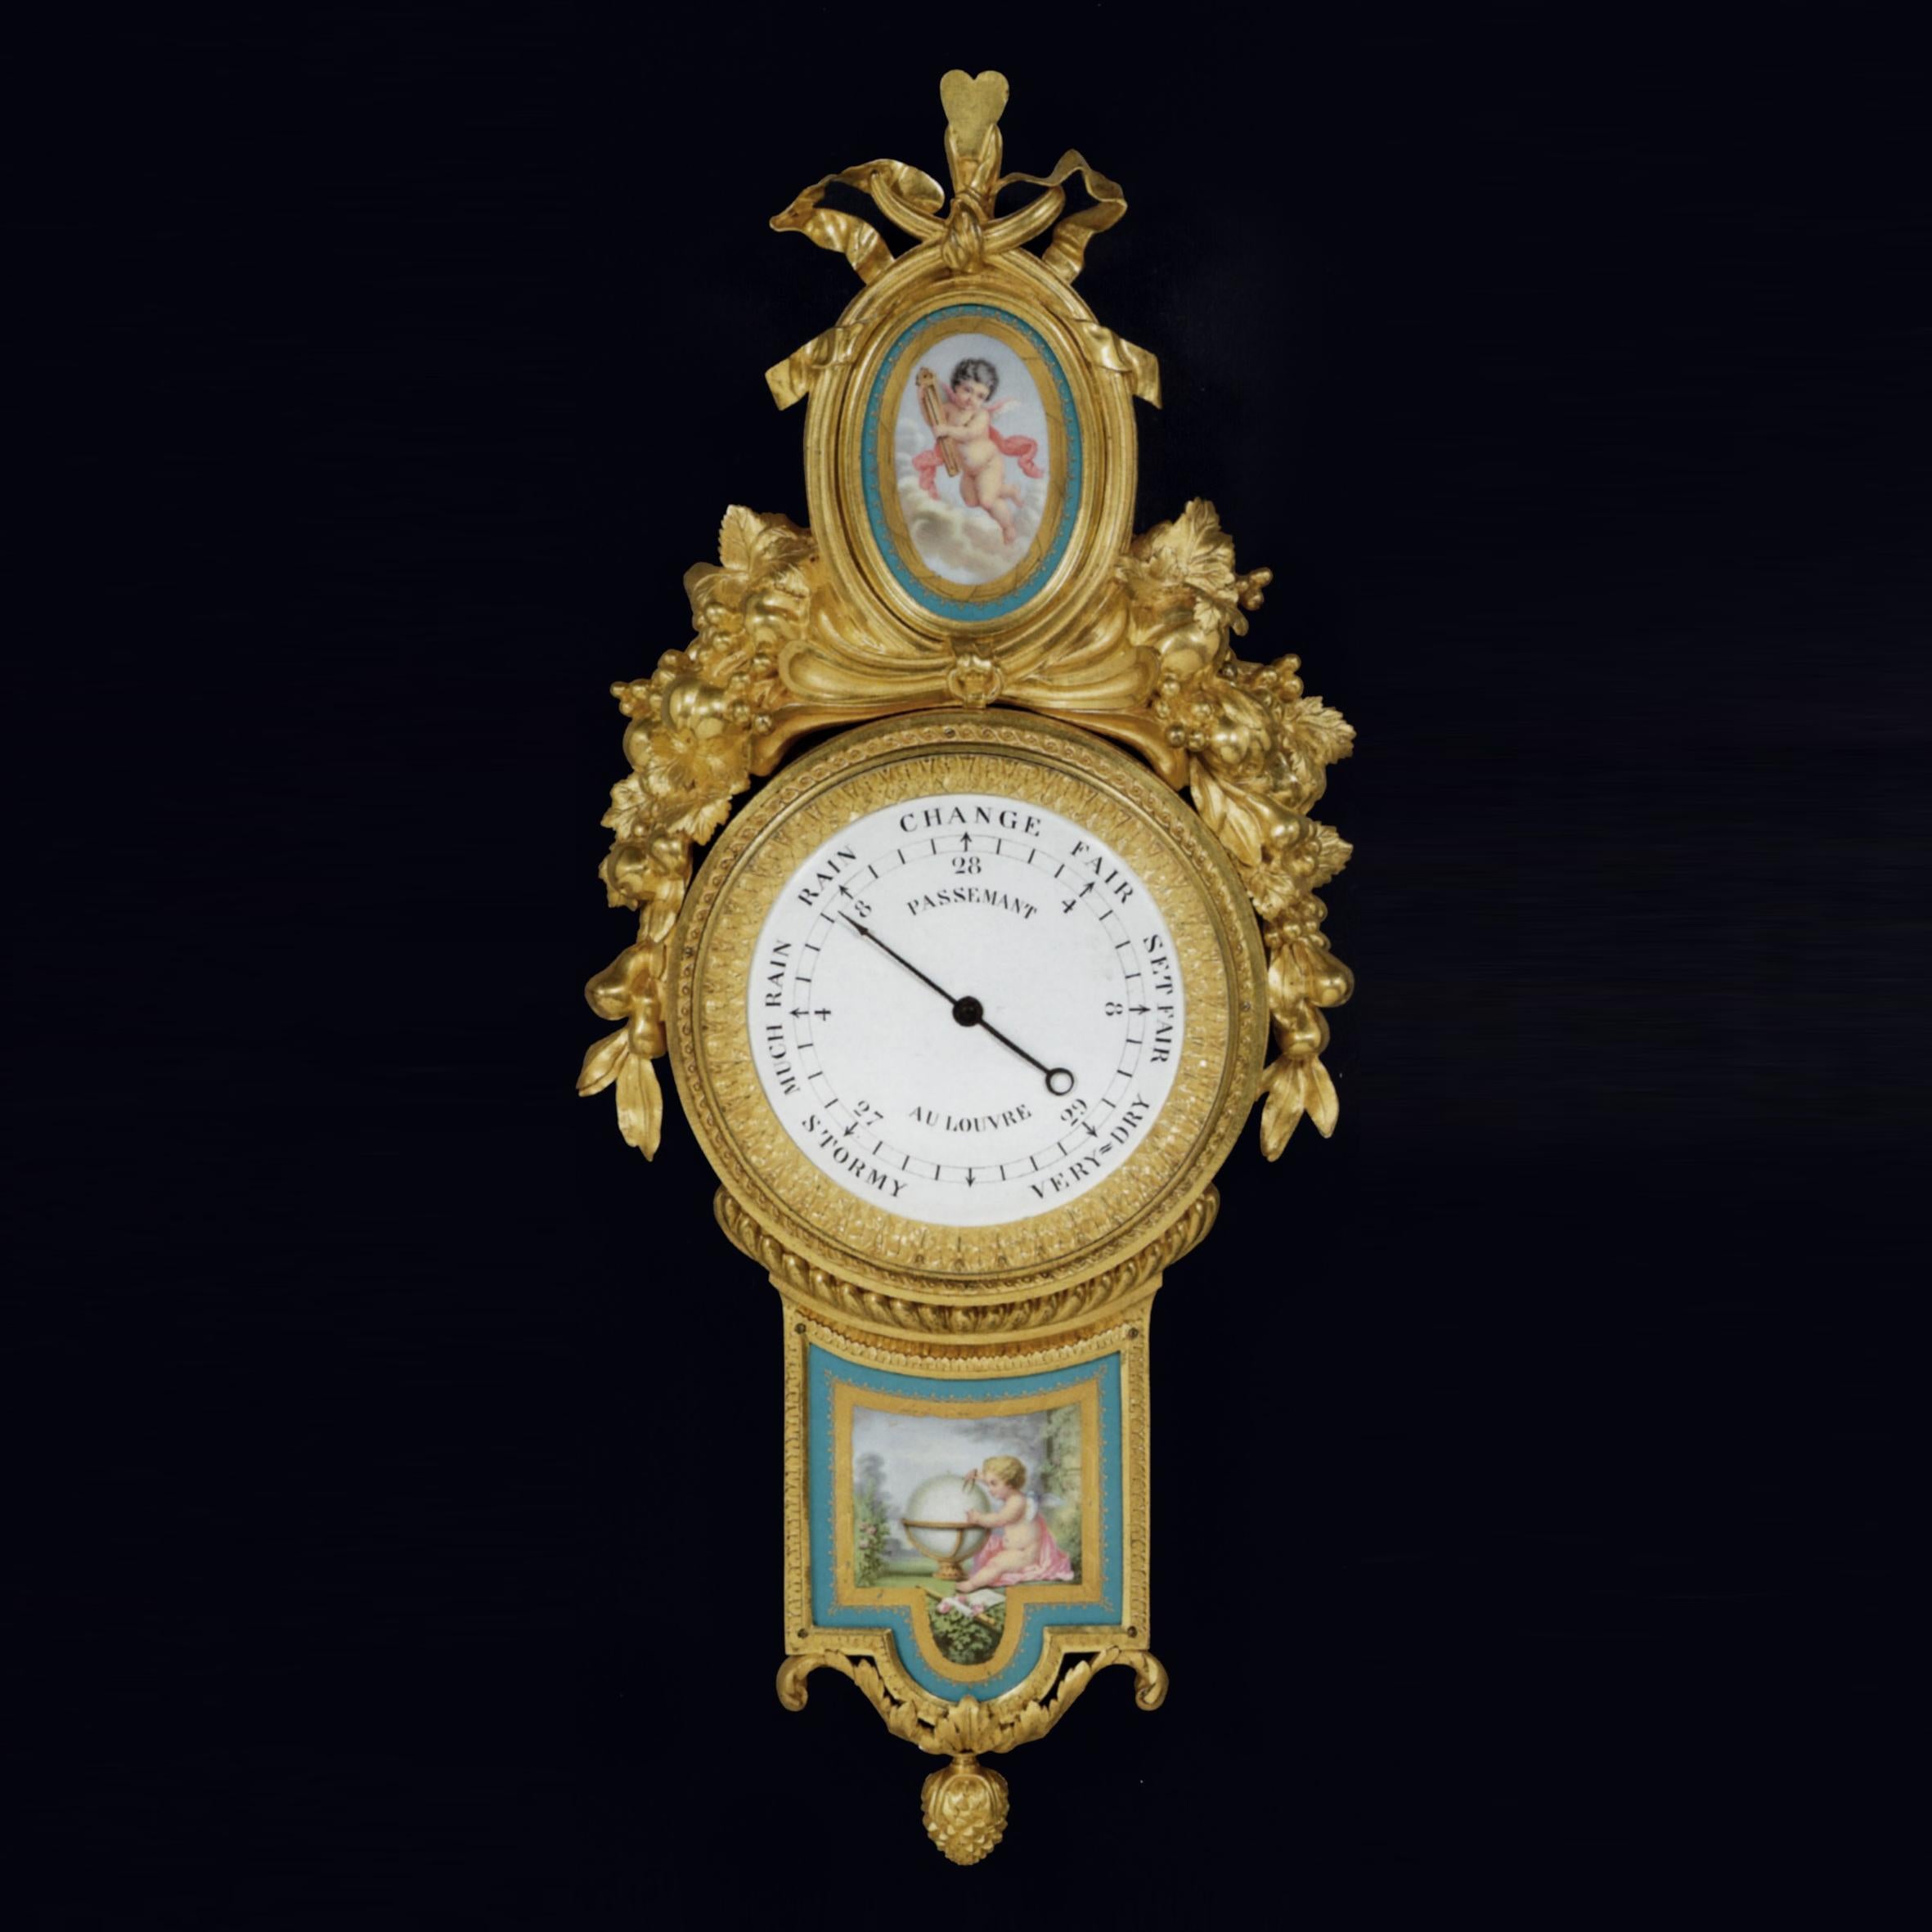 Eine sehr schöne Wanduhr aus vergoldeter Bronze und ein passendes Barometer mit Sèvres-Plaketten.

Das Zifferblatt der Uhr signiert 'JULIEN LEROY A PARIS', das Barometerzifferblatt signiert 'PASSEMANT AU LOUVRE'.

Die Wanduhr mit